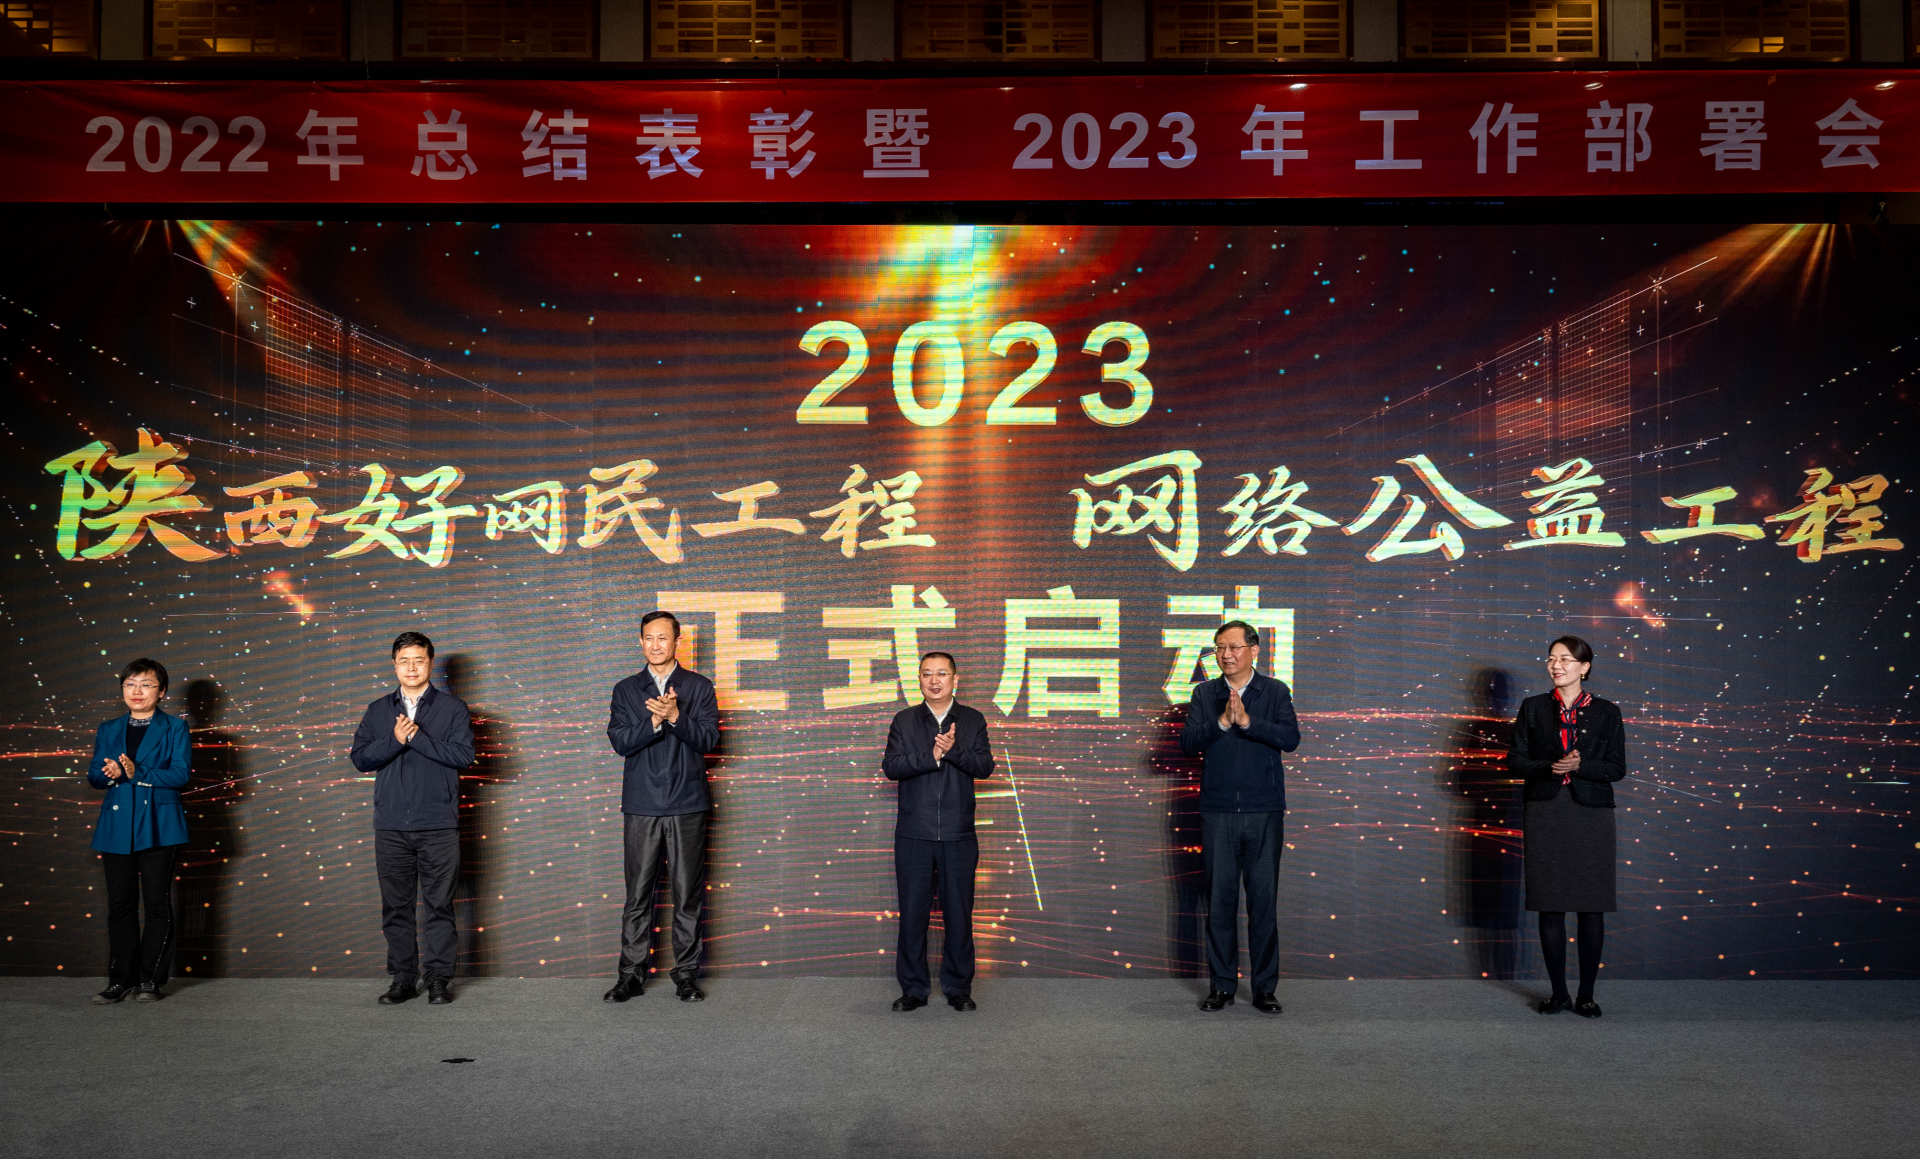 2022年陕西好网民工程和网络公益工程 总结表彰暨2023年工作部署会召开